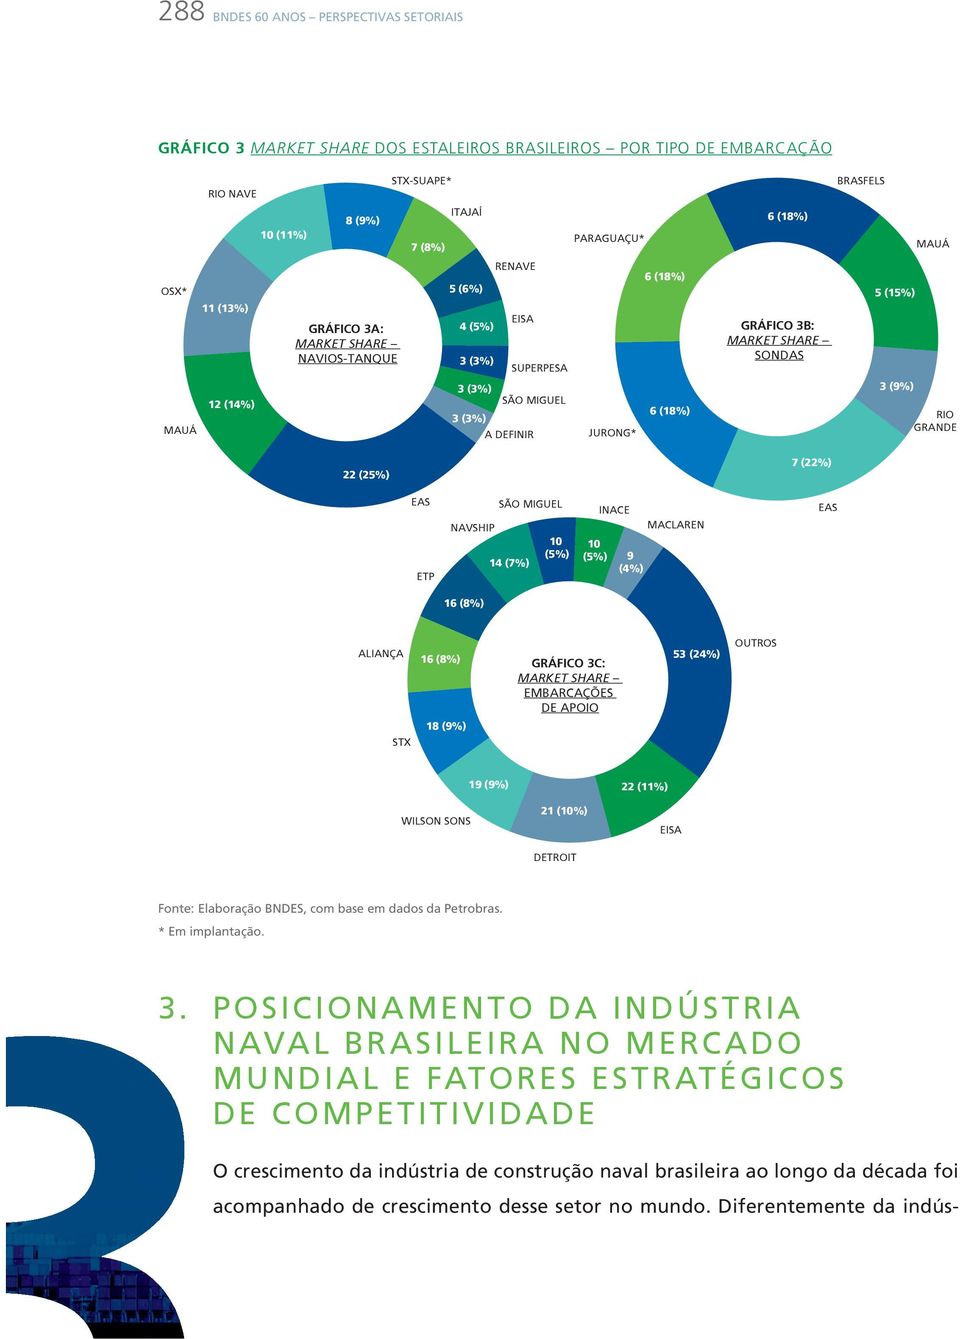 SONDAS 7 (22%) BRASFELS 5 (15%) 3 (9%) MAUÁ RIO GRANDE EAS ETP NAVSHIP 16 (8%) SÃO MIGUEL 14 (7%) 10 (5%) 10 (5%) INACE 9 (4%) MACLAREN EAS ALIANÇA STX 16 (8%) 18 (9%) GRÁFICO 3C: MARKET SHARE